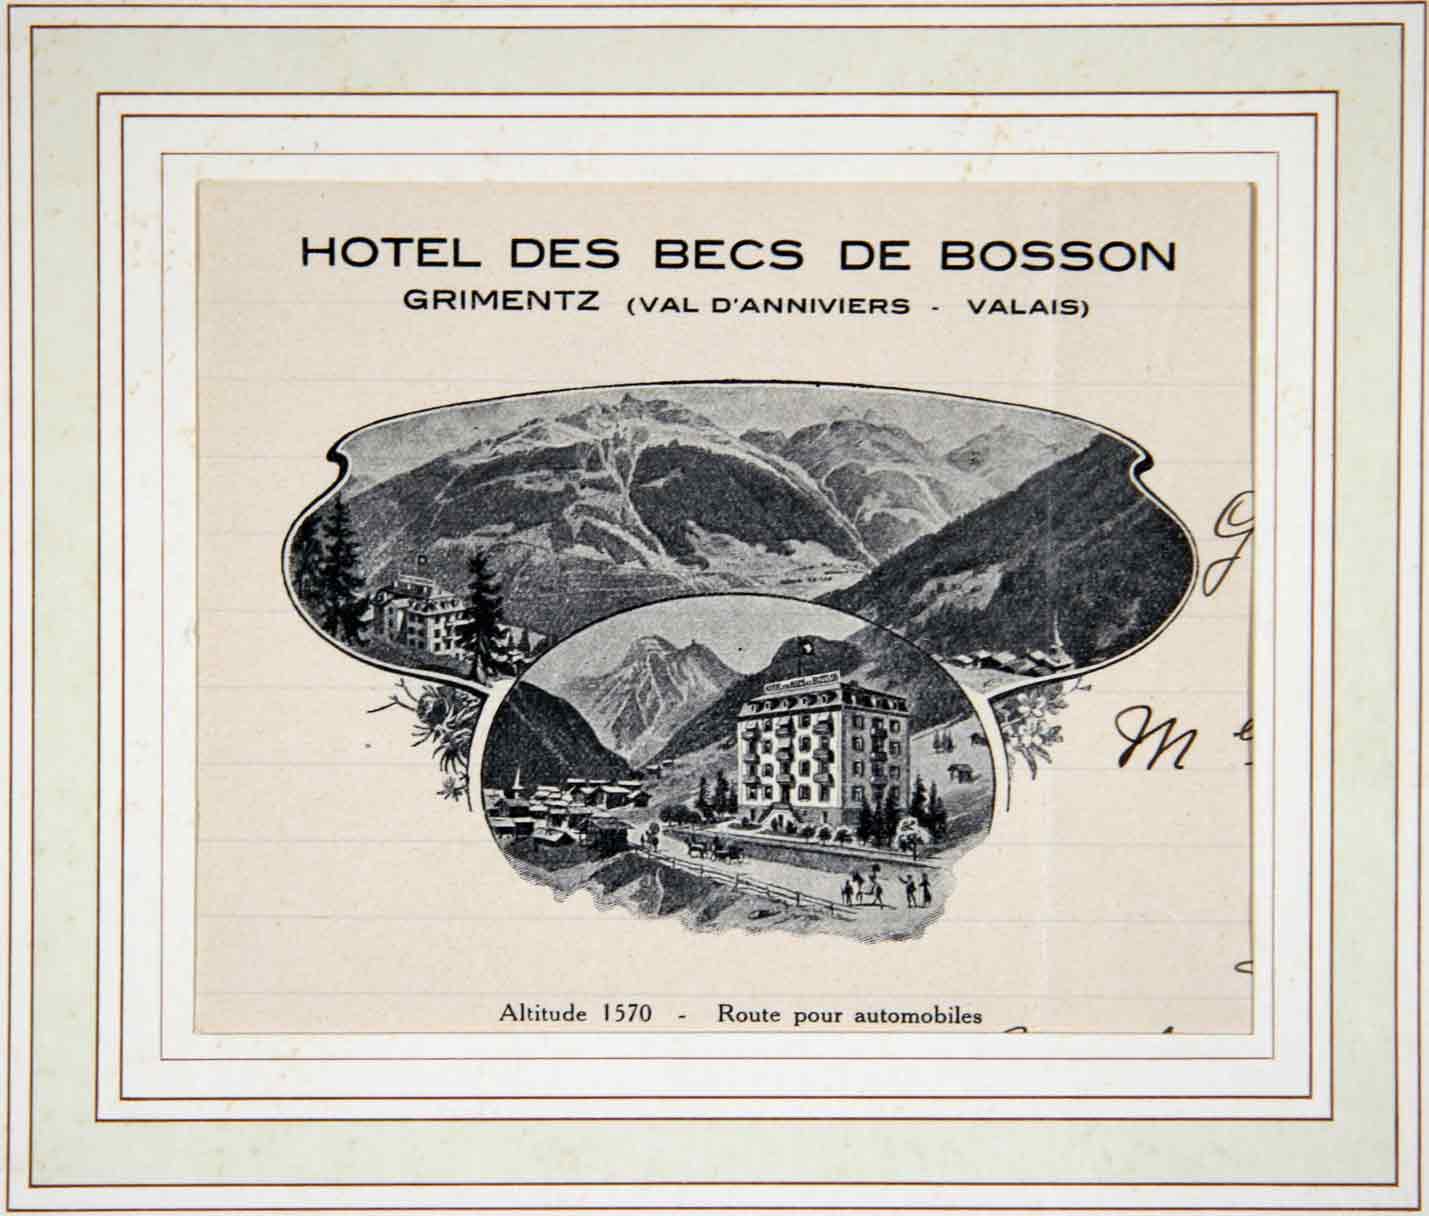  - (Vue de l') Hotel des Becs de Bosson Grimentz (Val d'Anniviers - Valais) Altitude 1570 - Route pour automobiles.